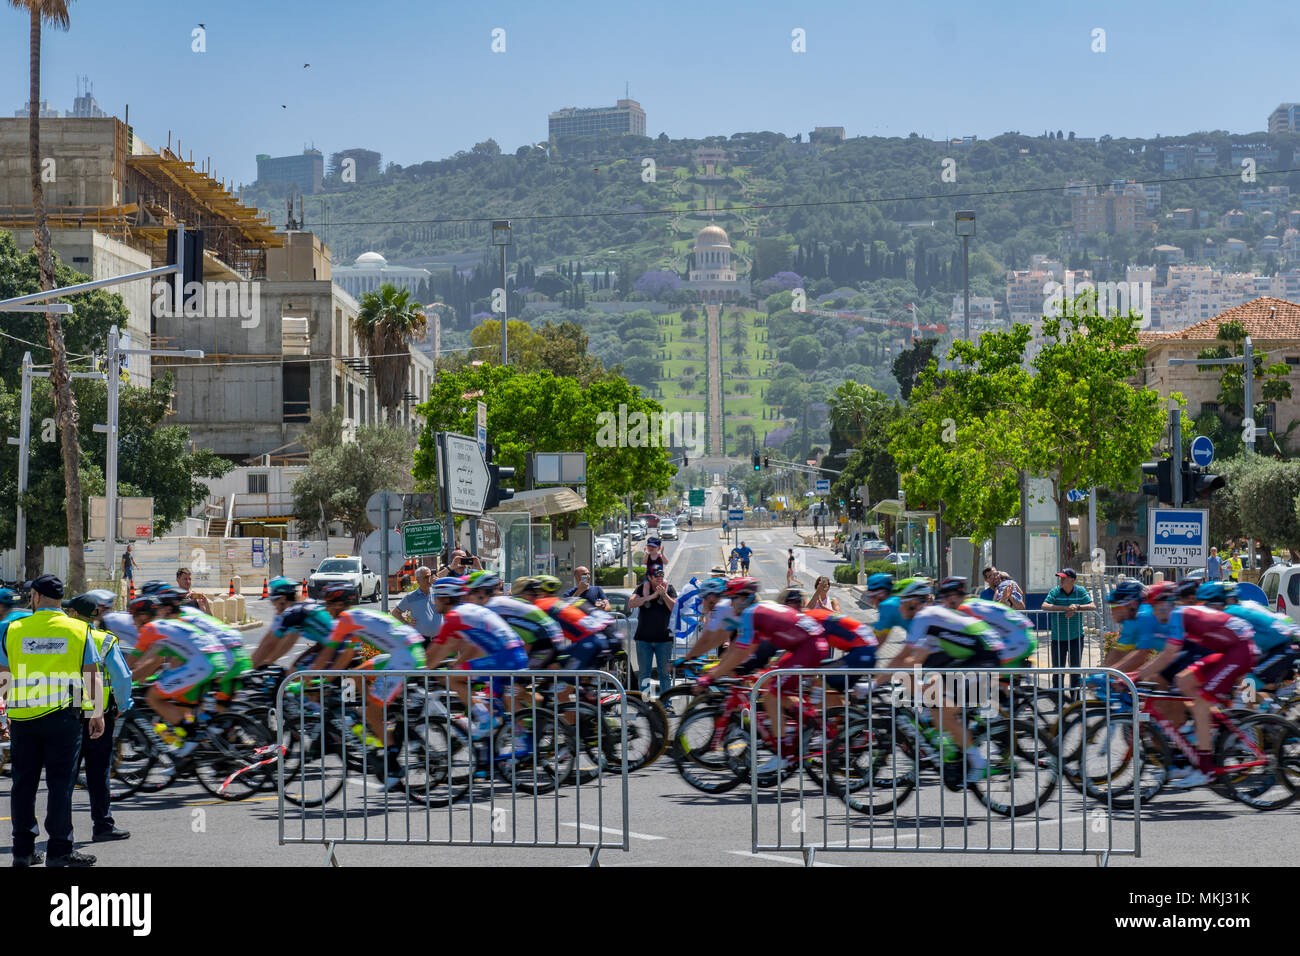 HAIFA, Israele - 05 Maggio 2018: Scena della fase 2 di 2018 il Giro d'Italia, con i ciclisti e gli spettatori e la Colonia Tedesca, Bahai giardini e Santuario di Foto Stock